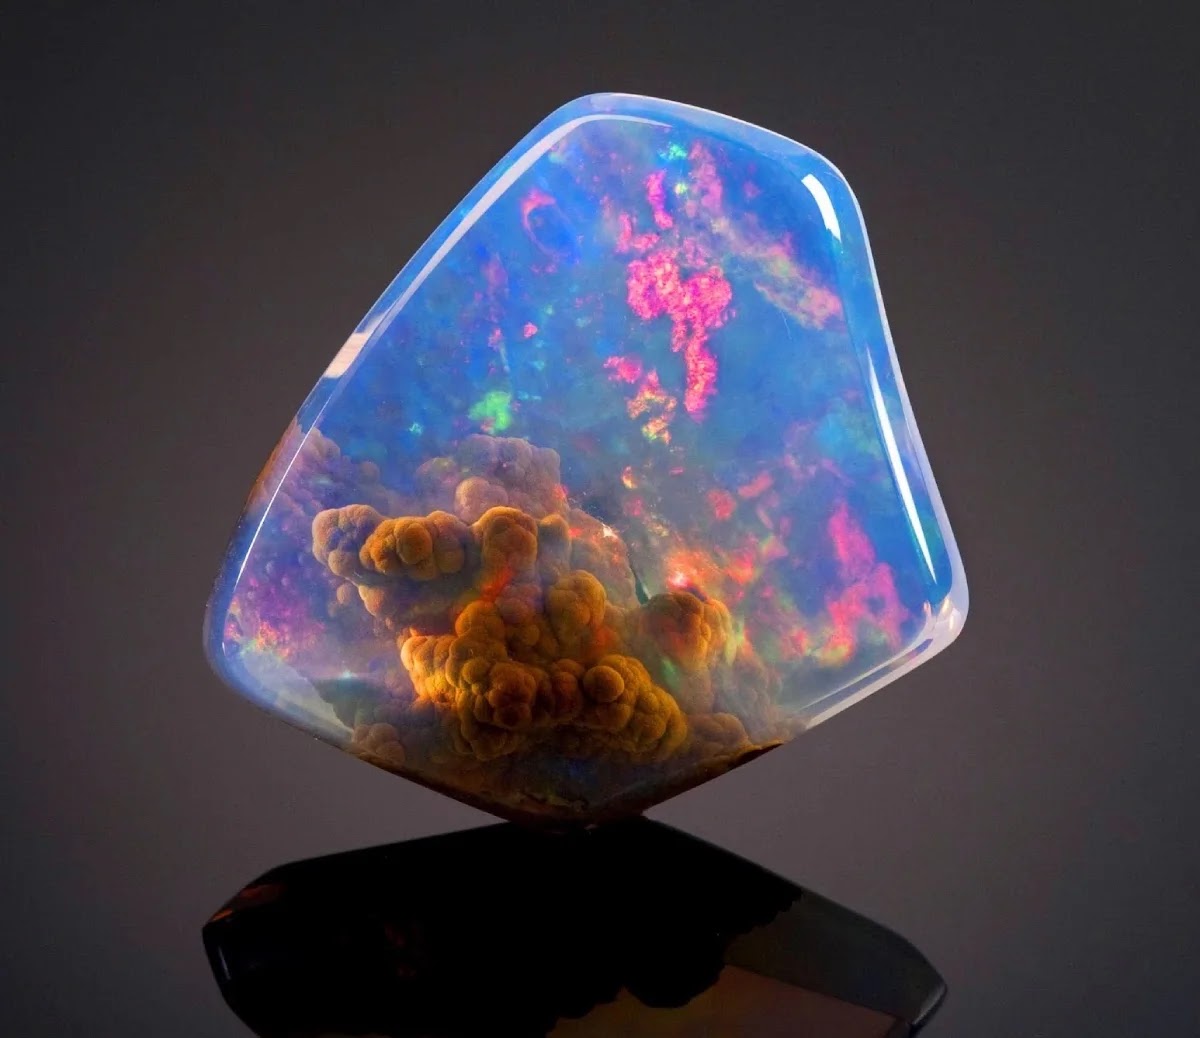 The Contraluz Opal Looks Like It Has A Universe Inside It.